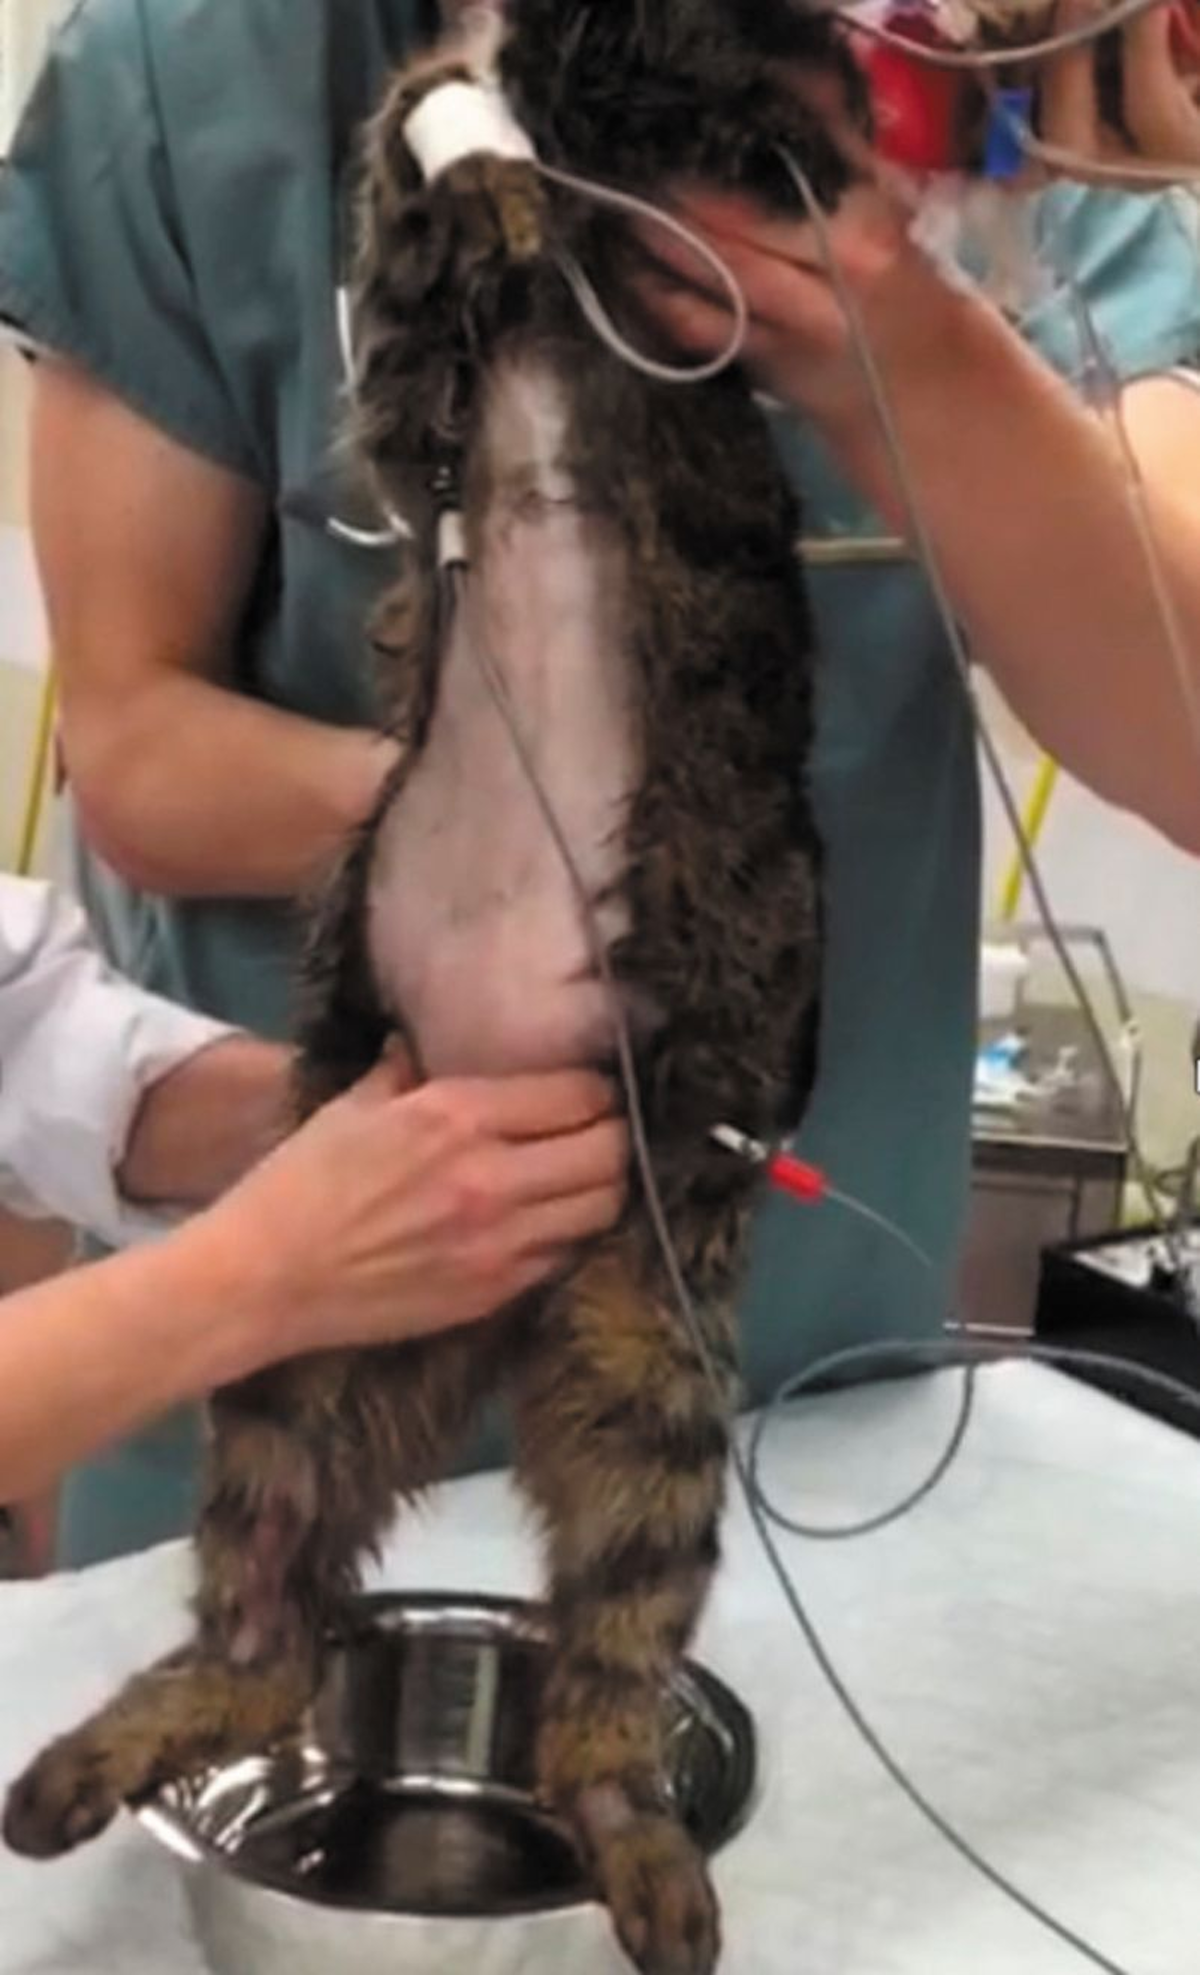 Bei dieser anästhesierten Katze wurde die Blase nach Katheterisierung mit physiologischer Kochsalzlösung gefüllt. Die Katze wird vertikal gehalten, und die Blase wird palpiert.